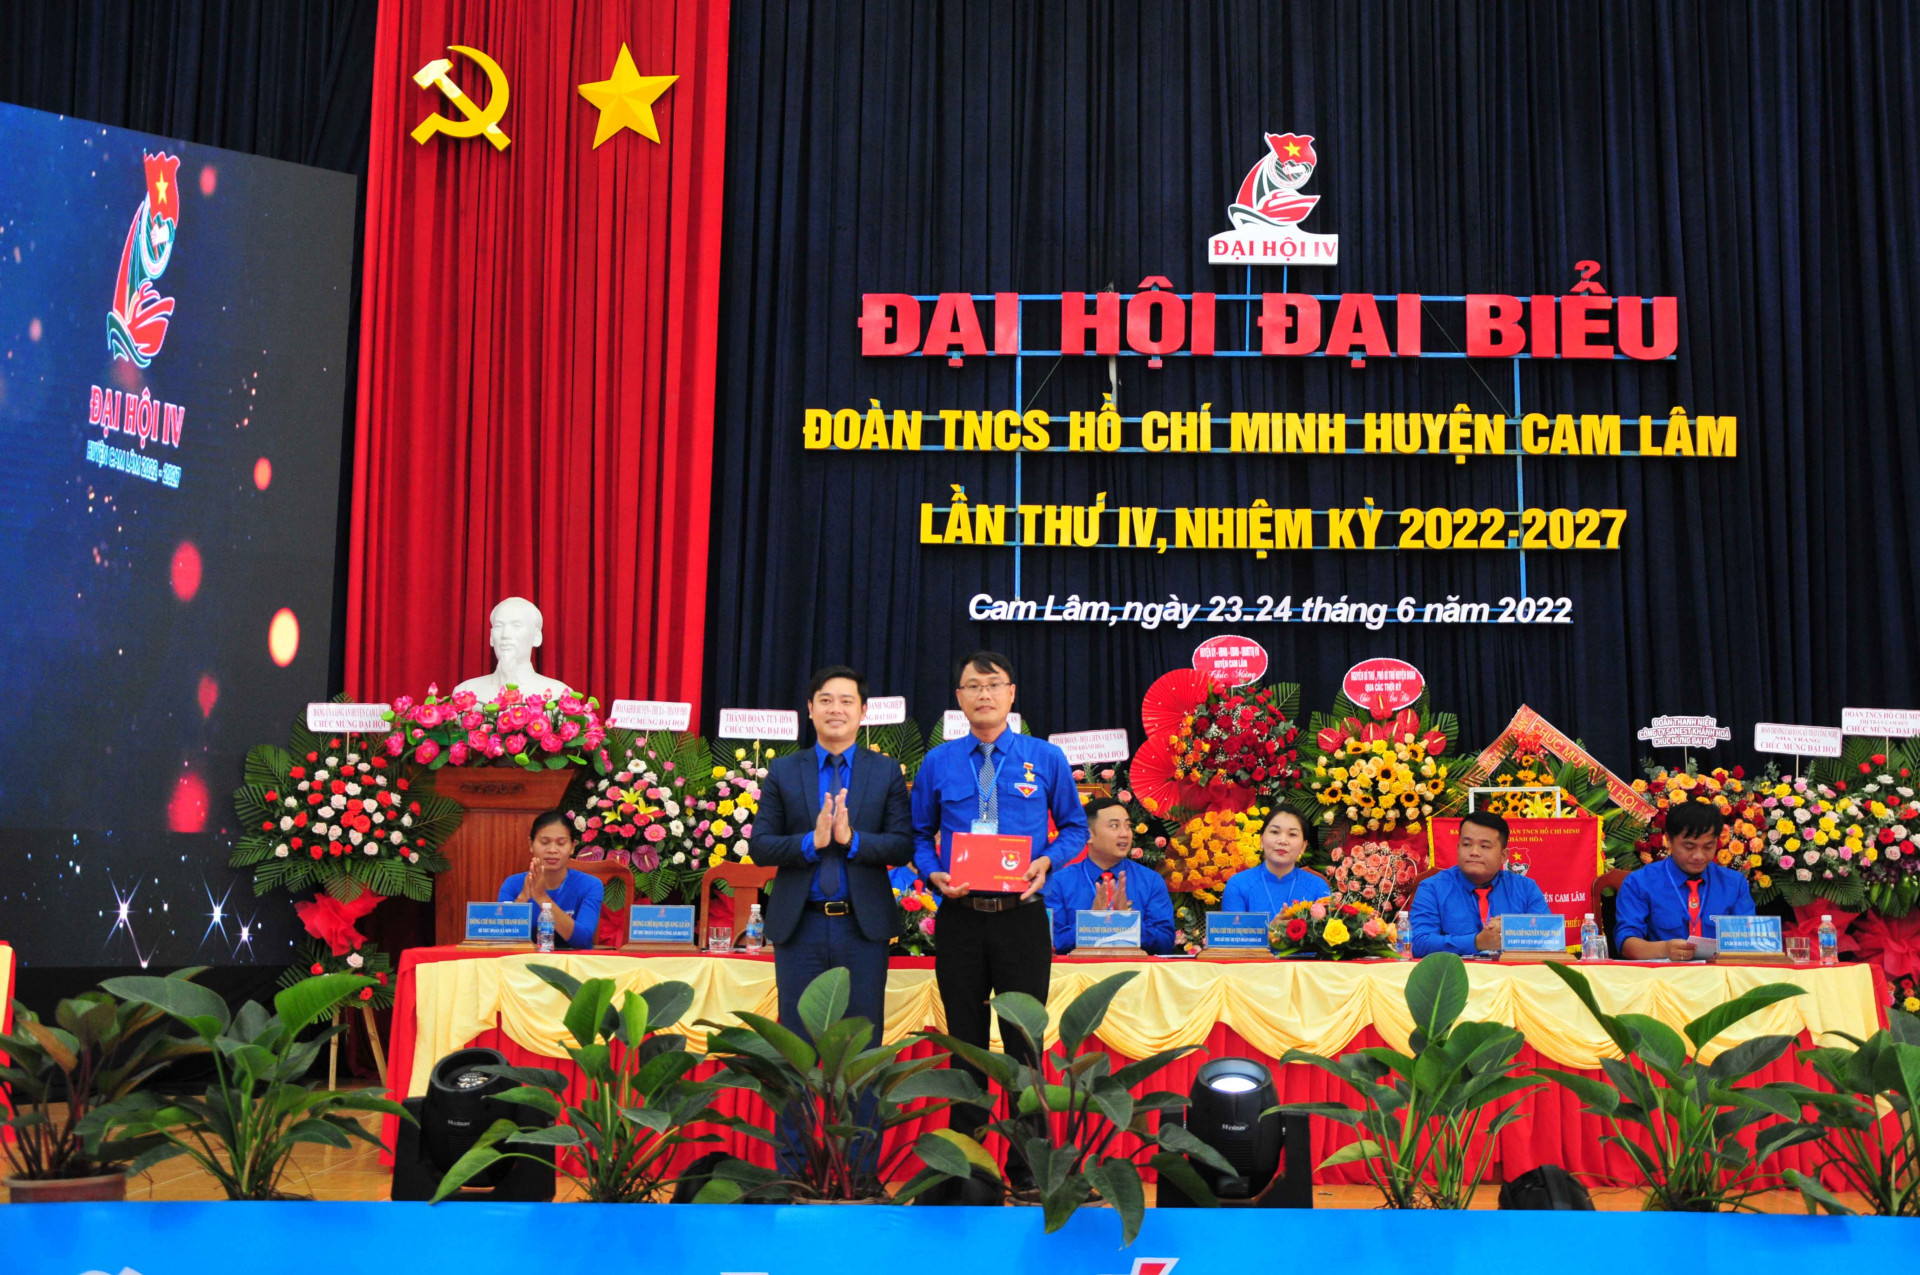 Lãnh đạo Tỉnh đoàn thừa uỷ quyền của Trung ương Đoàn trao kỷ niệm chương Vì thế hệ trẻ cho một cá nhân của huyện Cam Lâm